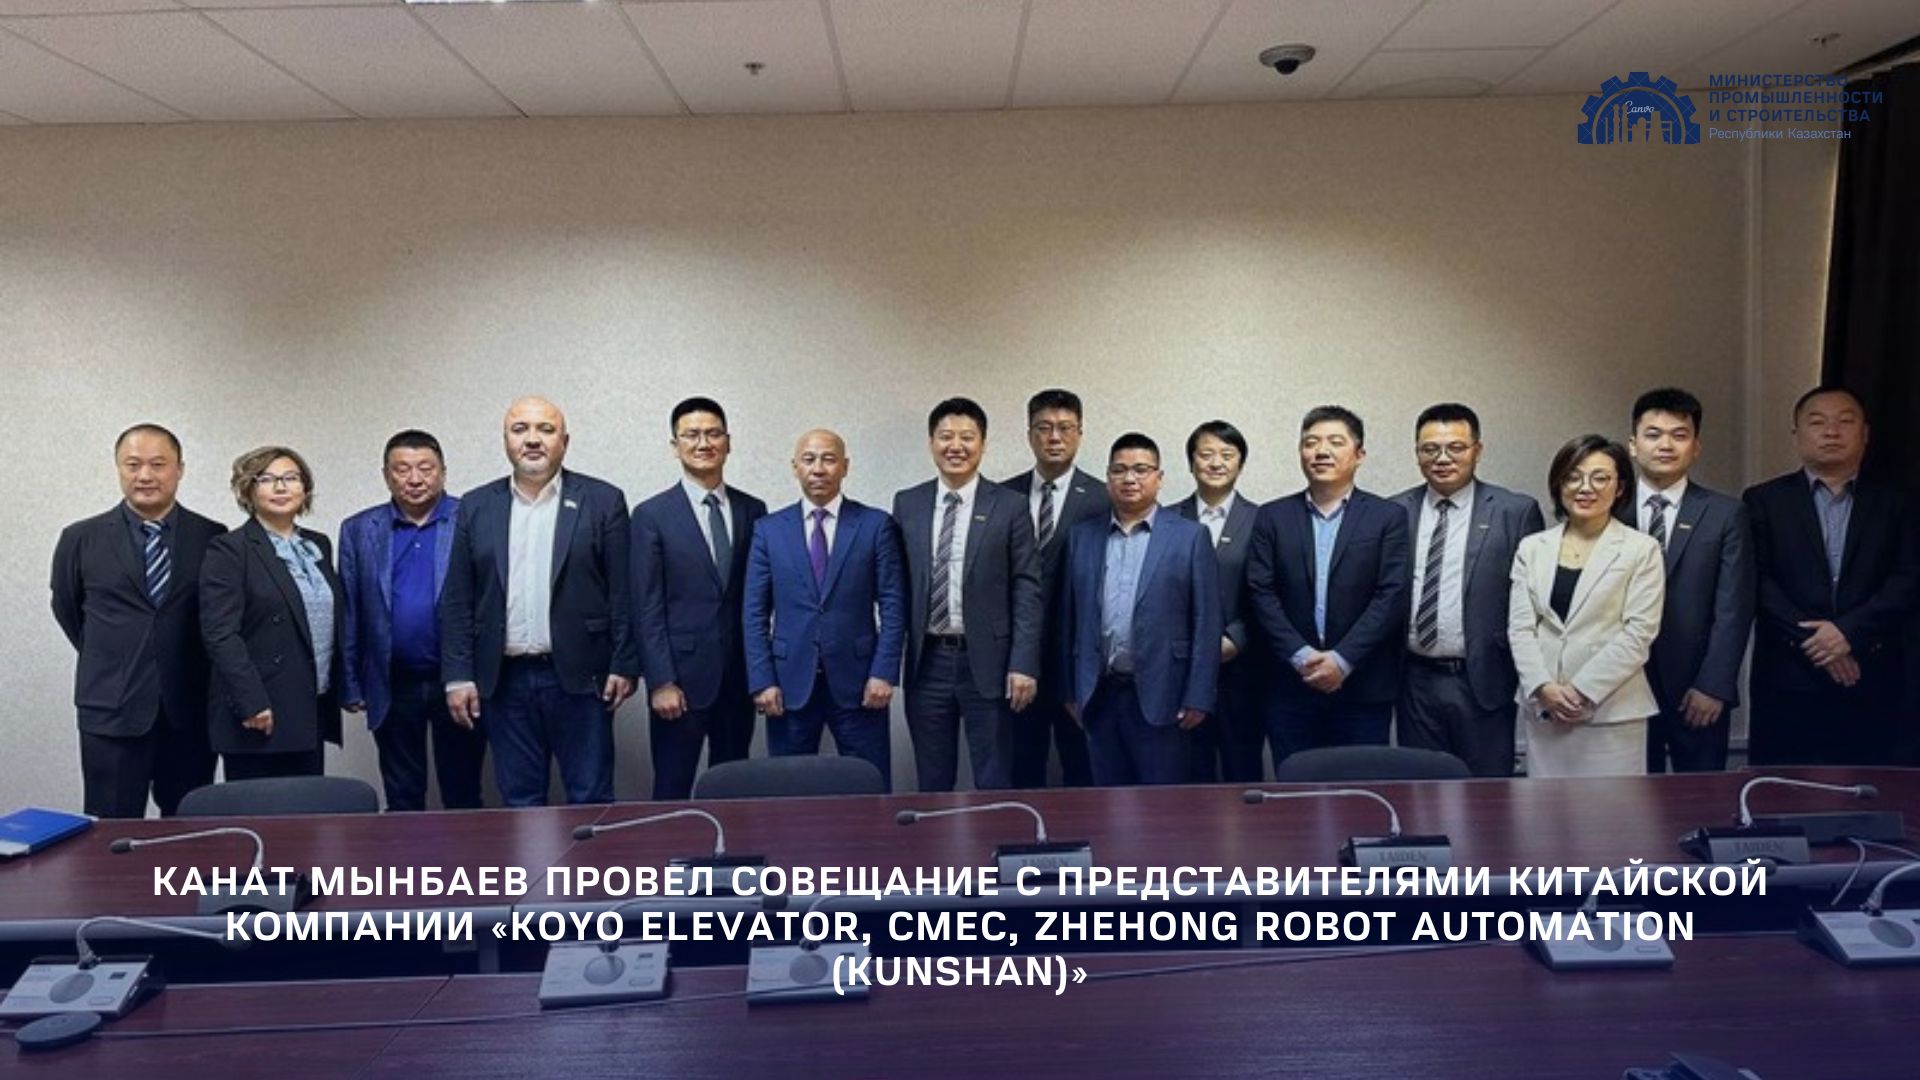 Канат Мынбаев провел совещание с представителями китайской компании «KOYO Elevator, CMEC, Zhehong Robot Automation (Kunshan)»